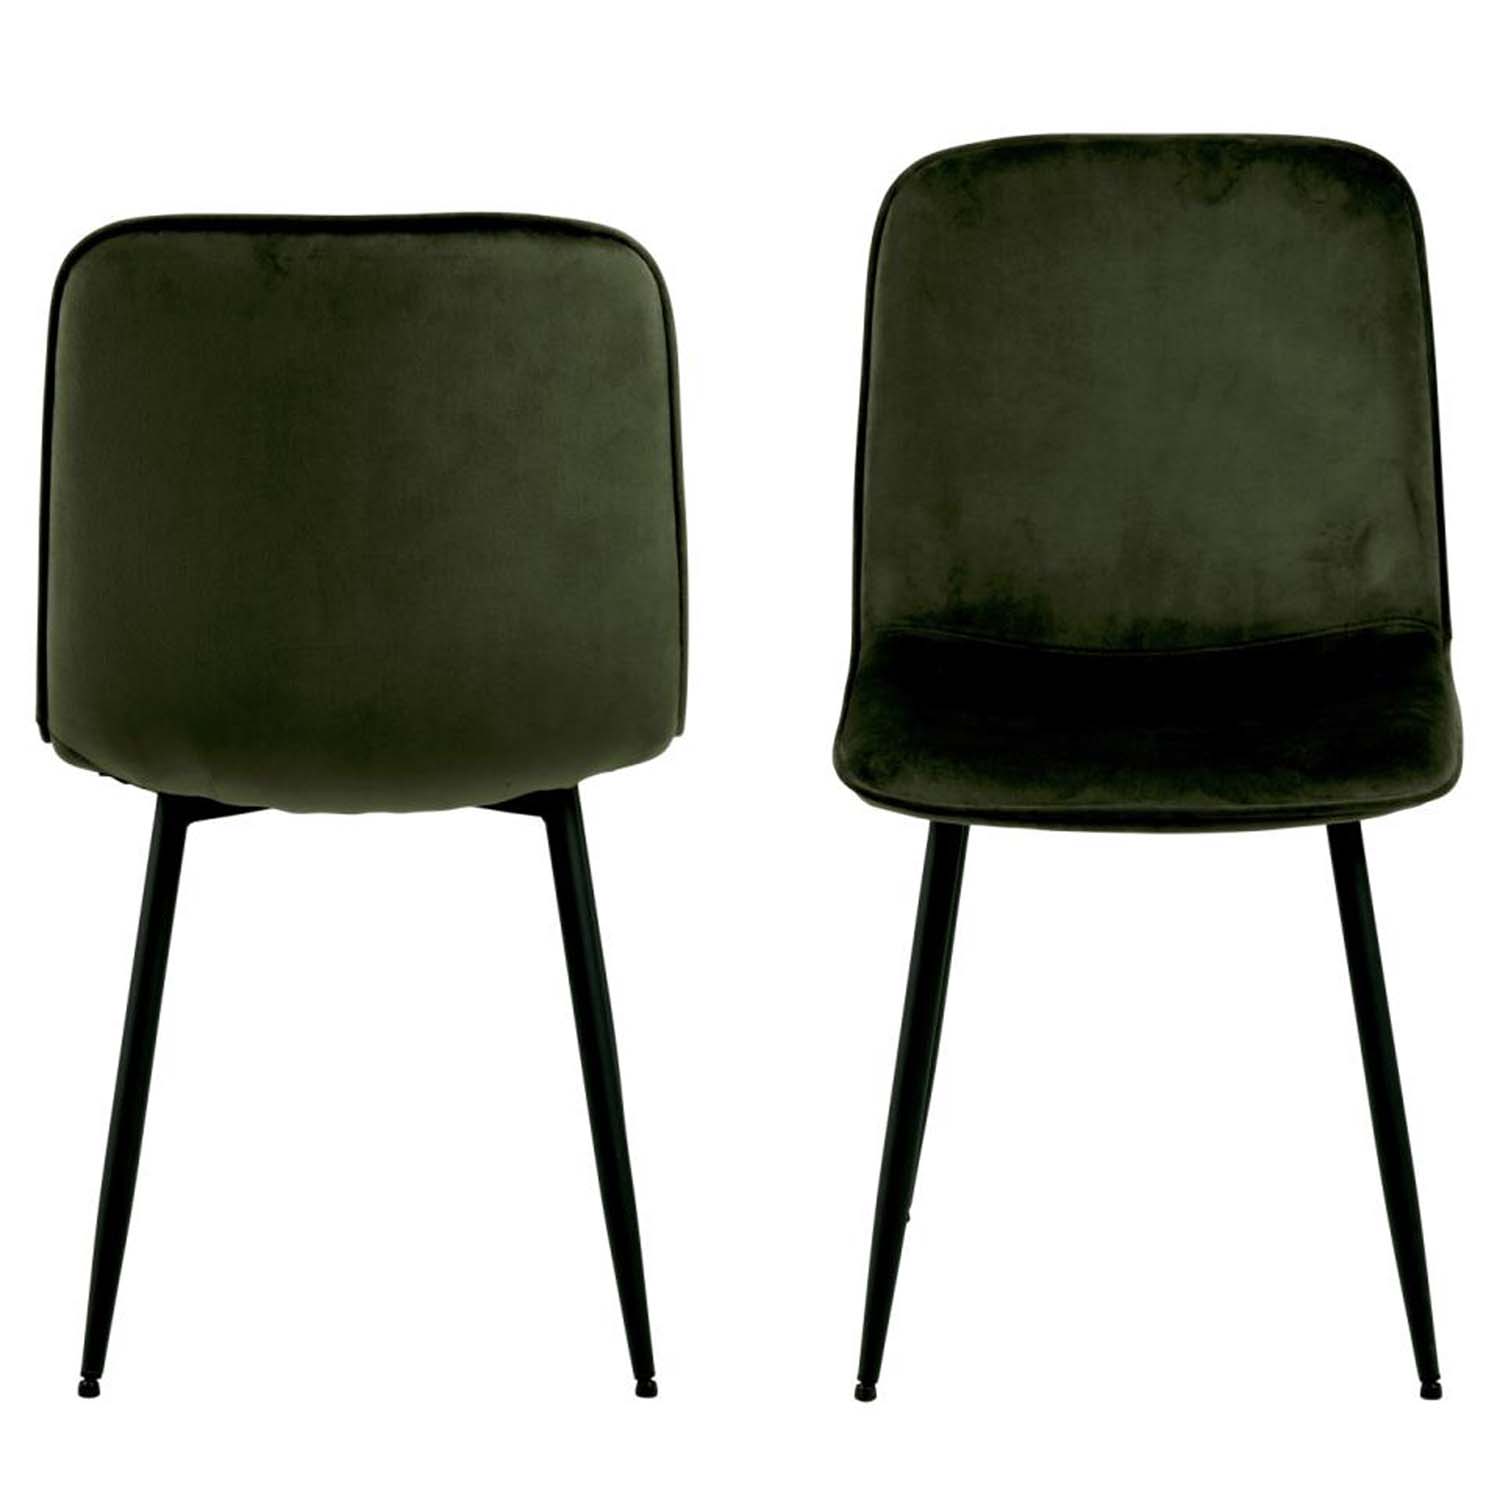 ACT NORDIC Delmy spisebordsstol - olivengrøn polyester og sort metal